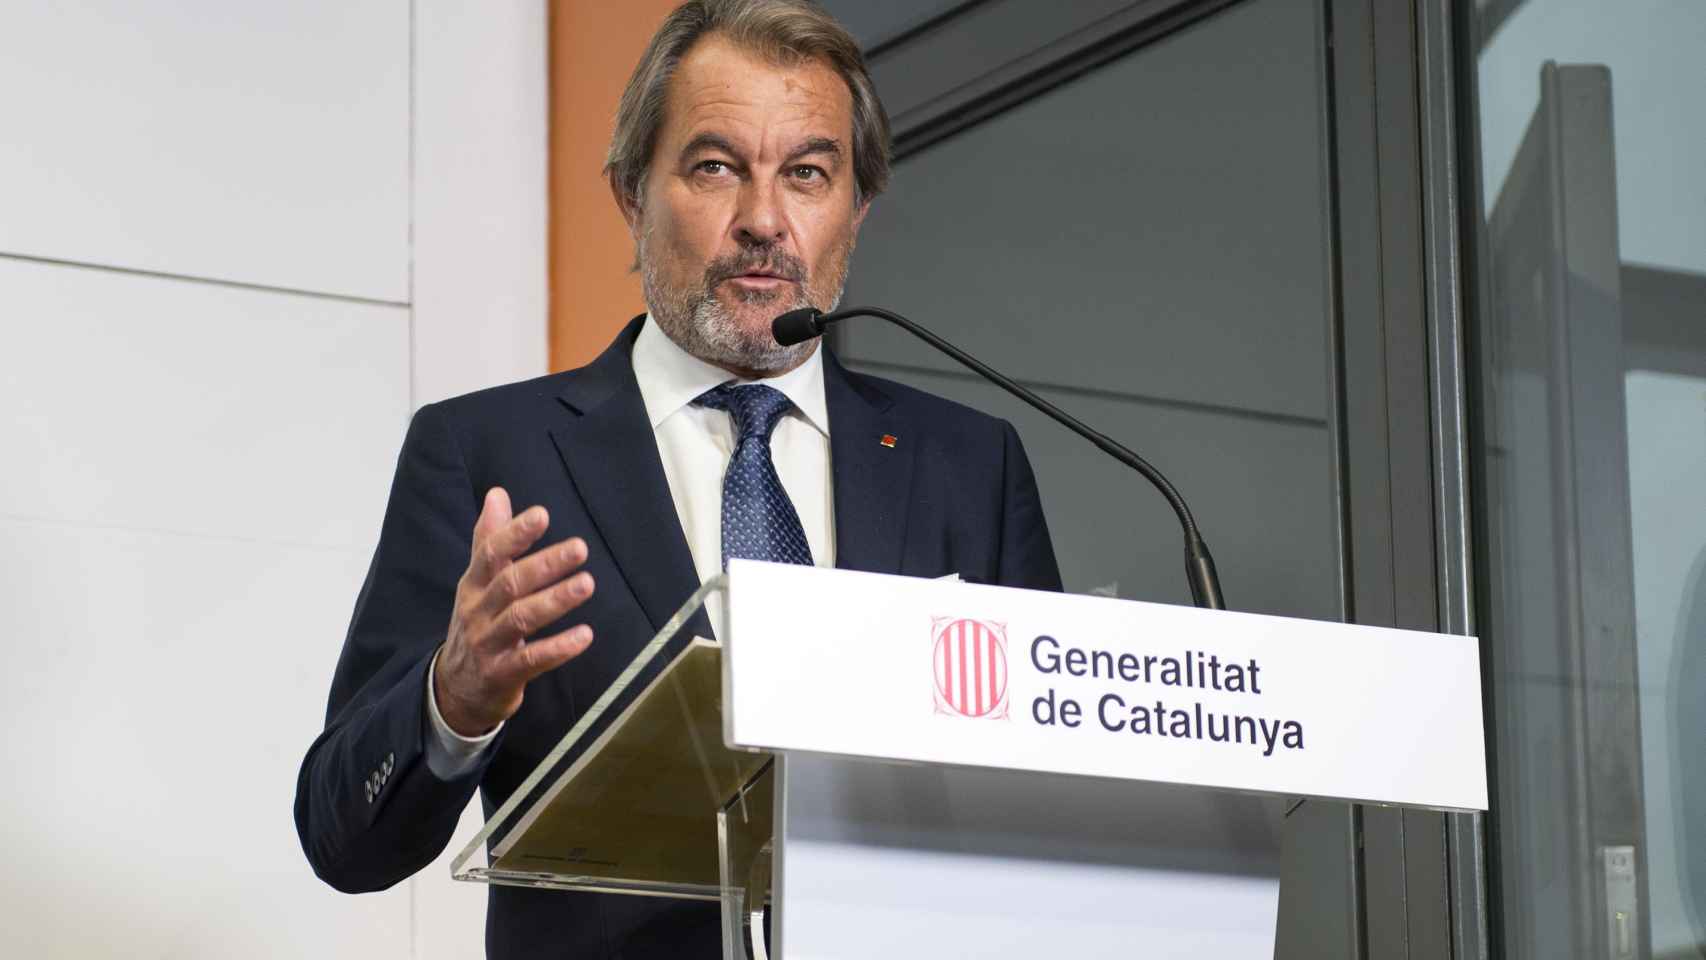 El expresidente de la Generalitat de Cataluña, Artur Mas, en una imagen de archivo / Glòria Sánchez - EUROPA PRESS